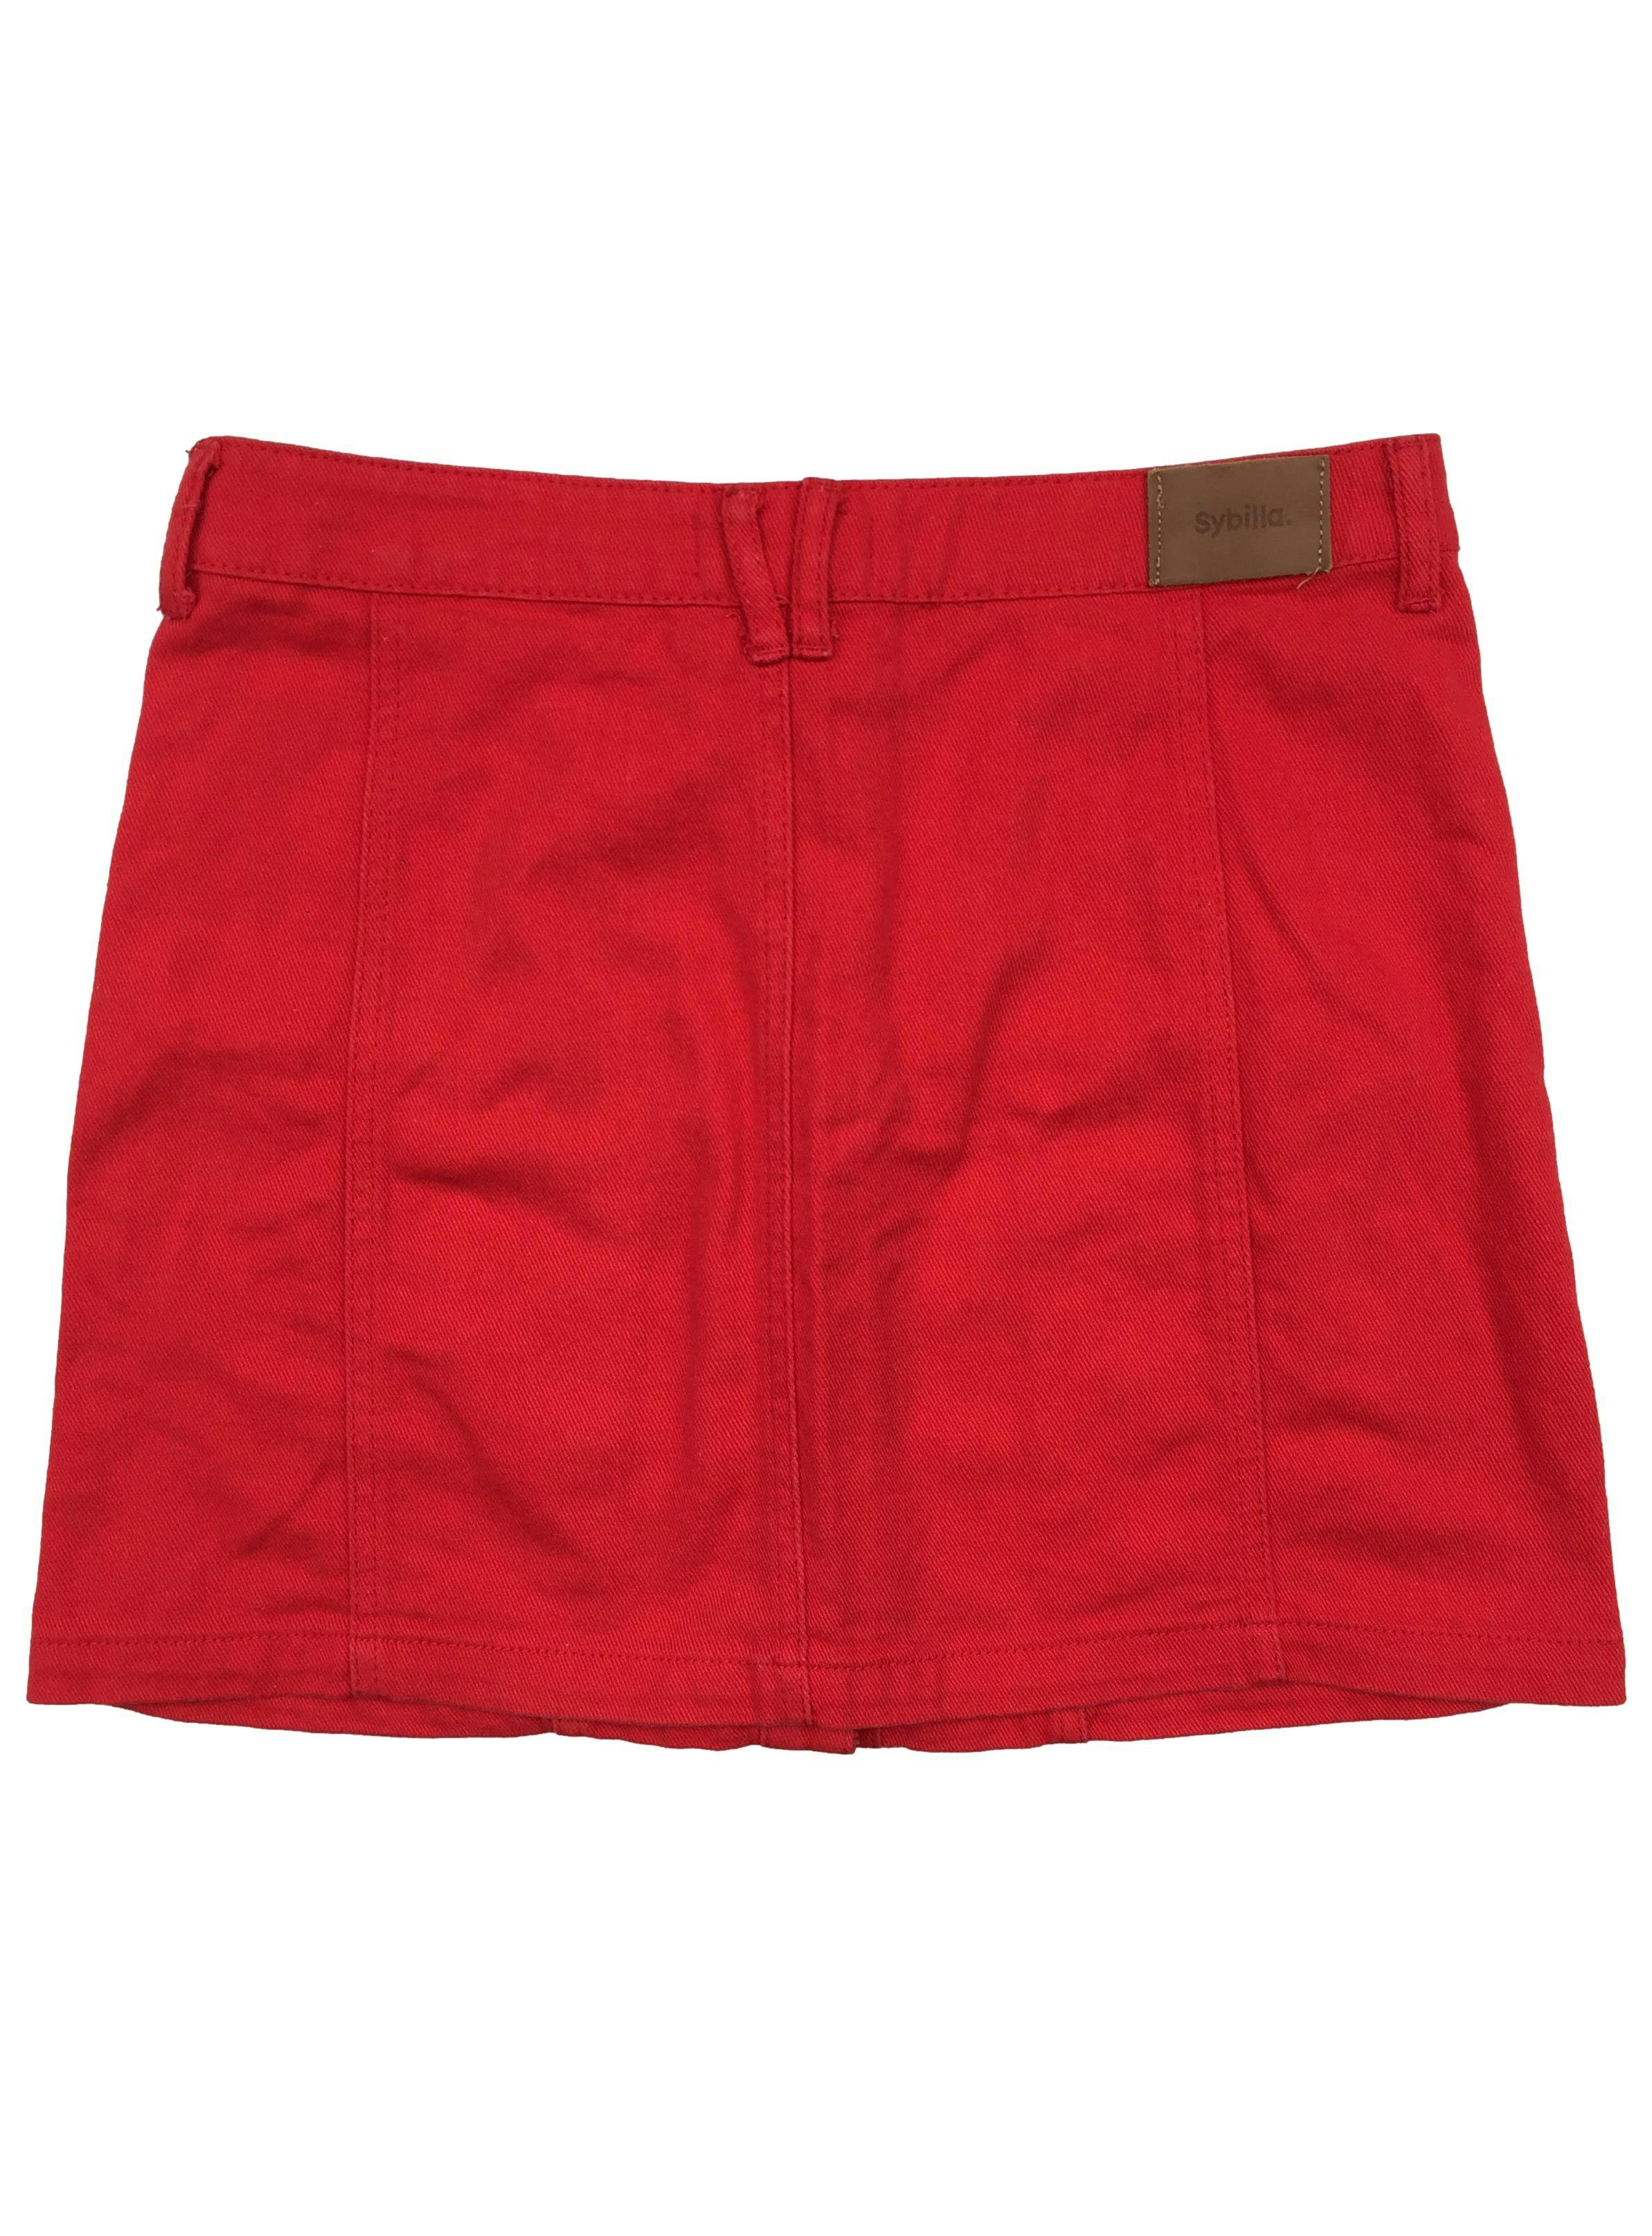 Falda Sybilla roja, botones y bolsillos delanteros. Cintura: 78cm, Largo: 40cm